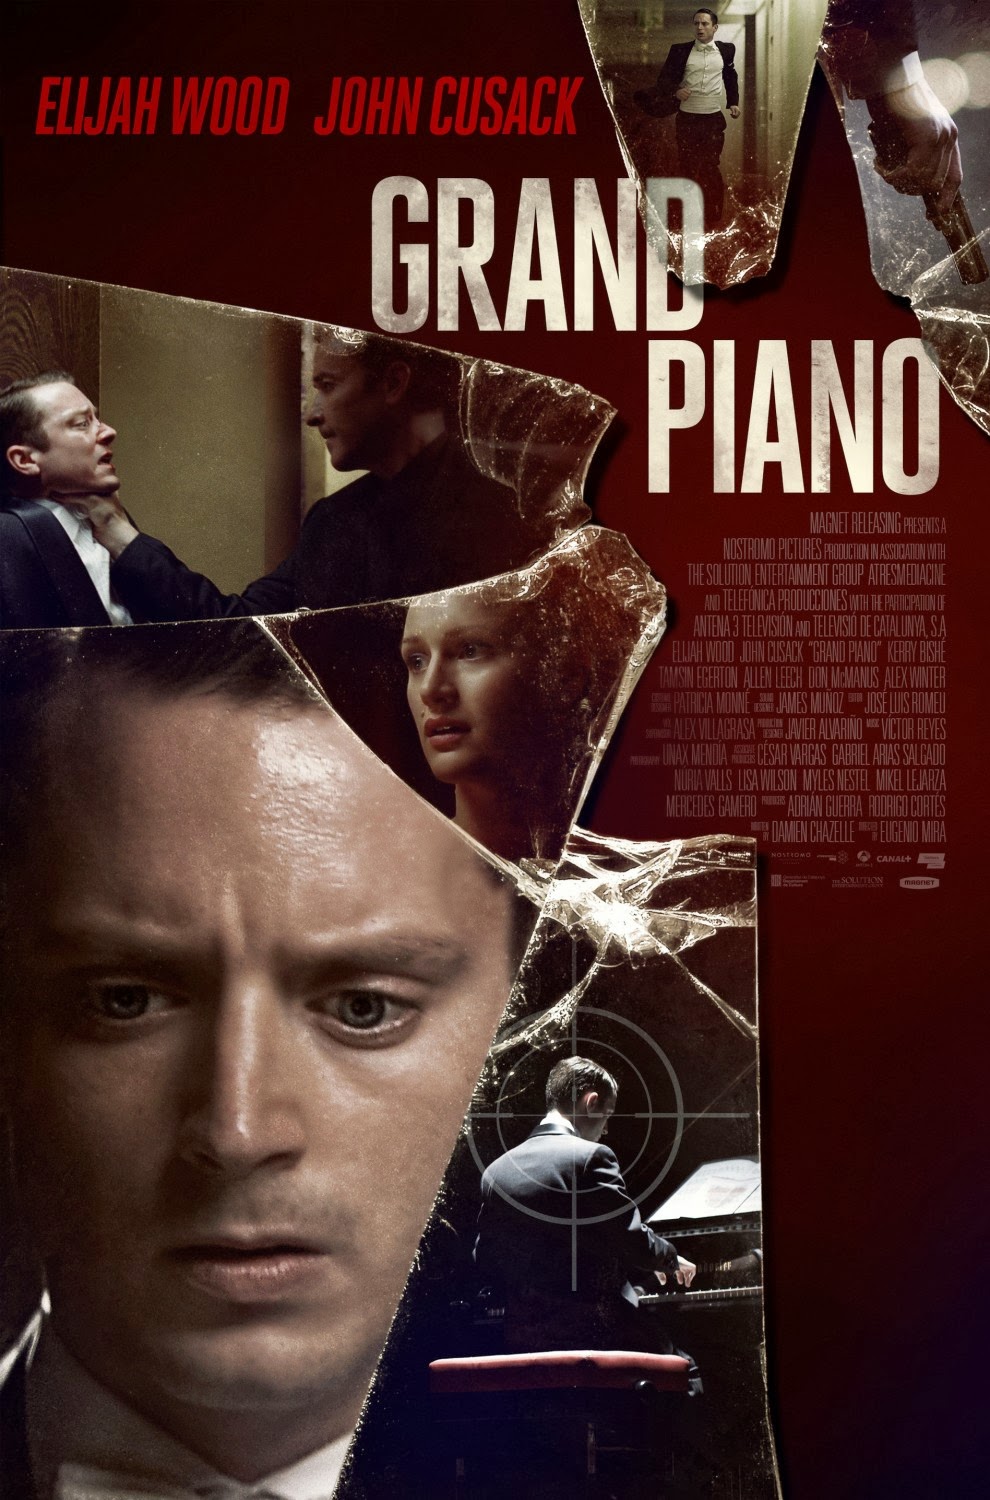 Xem Phim Buổi Hòa Nhạc Kinh Hoàng - Grand Piano HD Vietsub mien phi - Poster Full HD